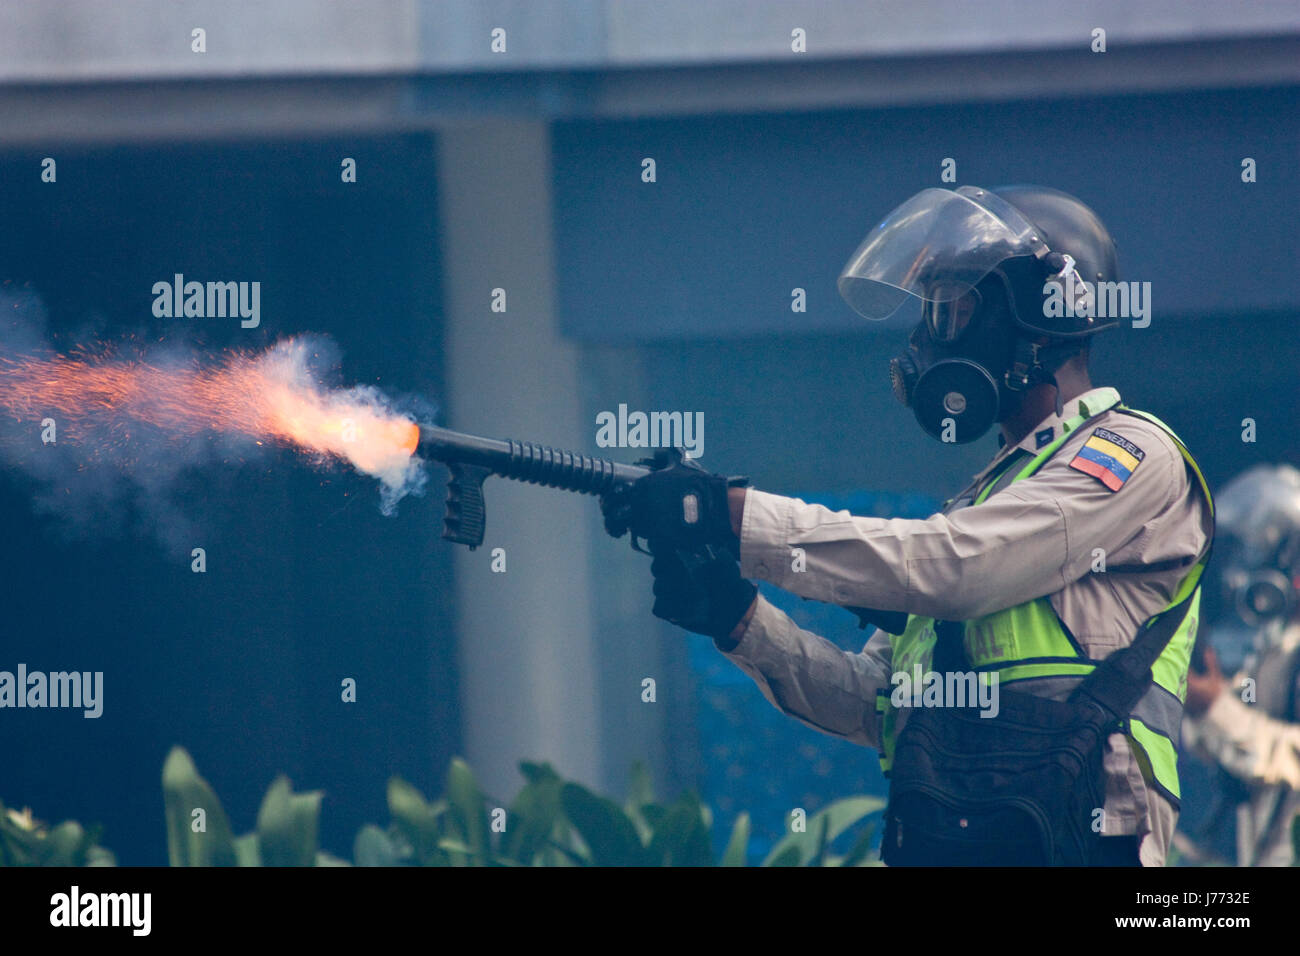 Ein Polizist feuert einen Kanister Tränengas gegen Demonstranten während einer Protestaktion gegen die Regierung von Nicolas Maduro in Caracas. Stockfoto